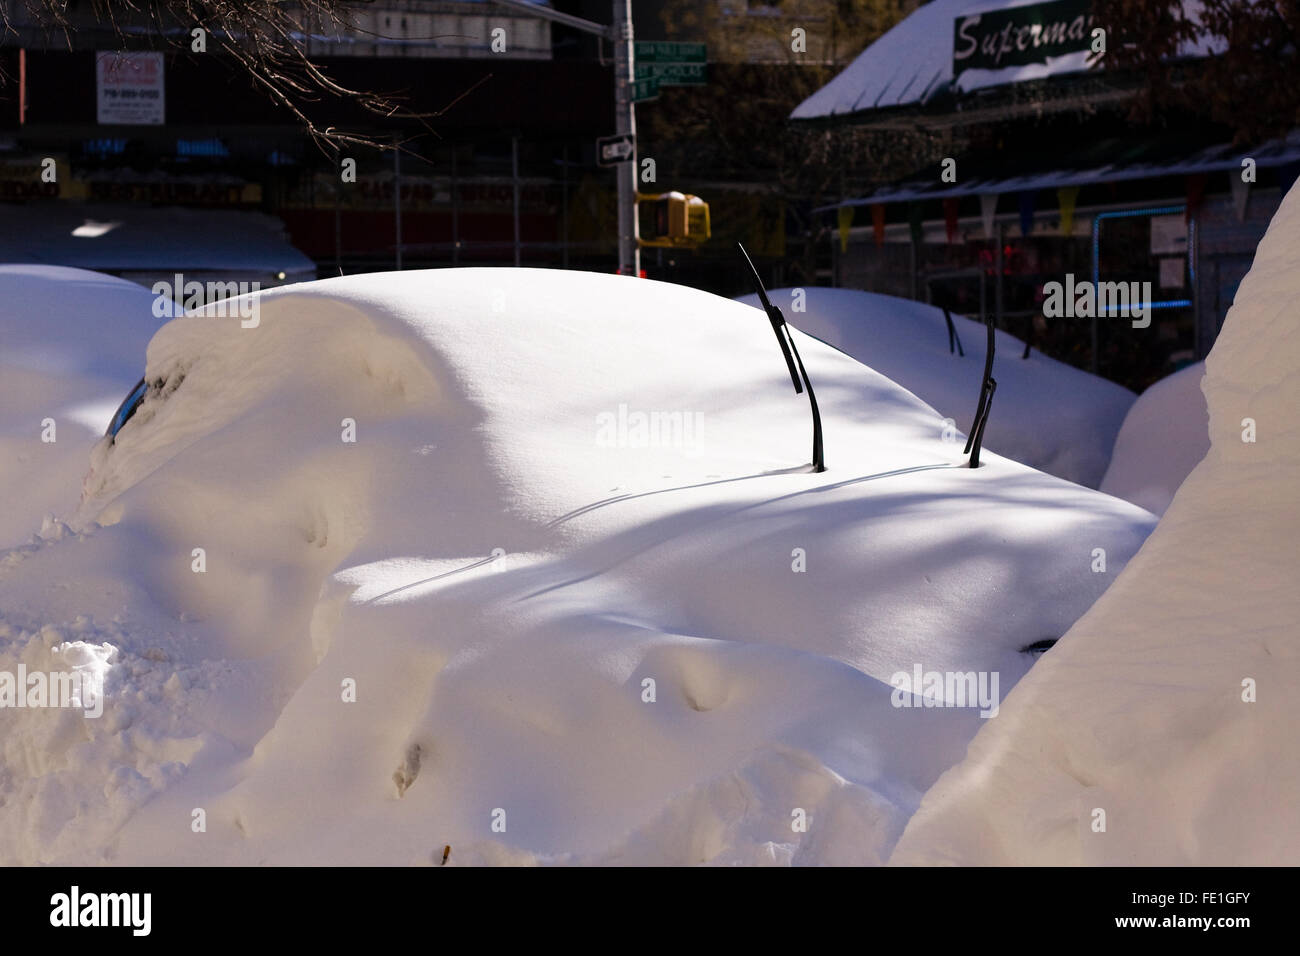 Fahrzeug auf einer Stadtstraße umgedrehten Scheibenwischer ragte aus dem Schnee bedeckt, nach einer Übernachtung Blizzard es begraben Stockfoto